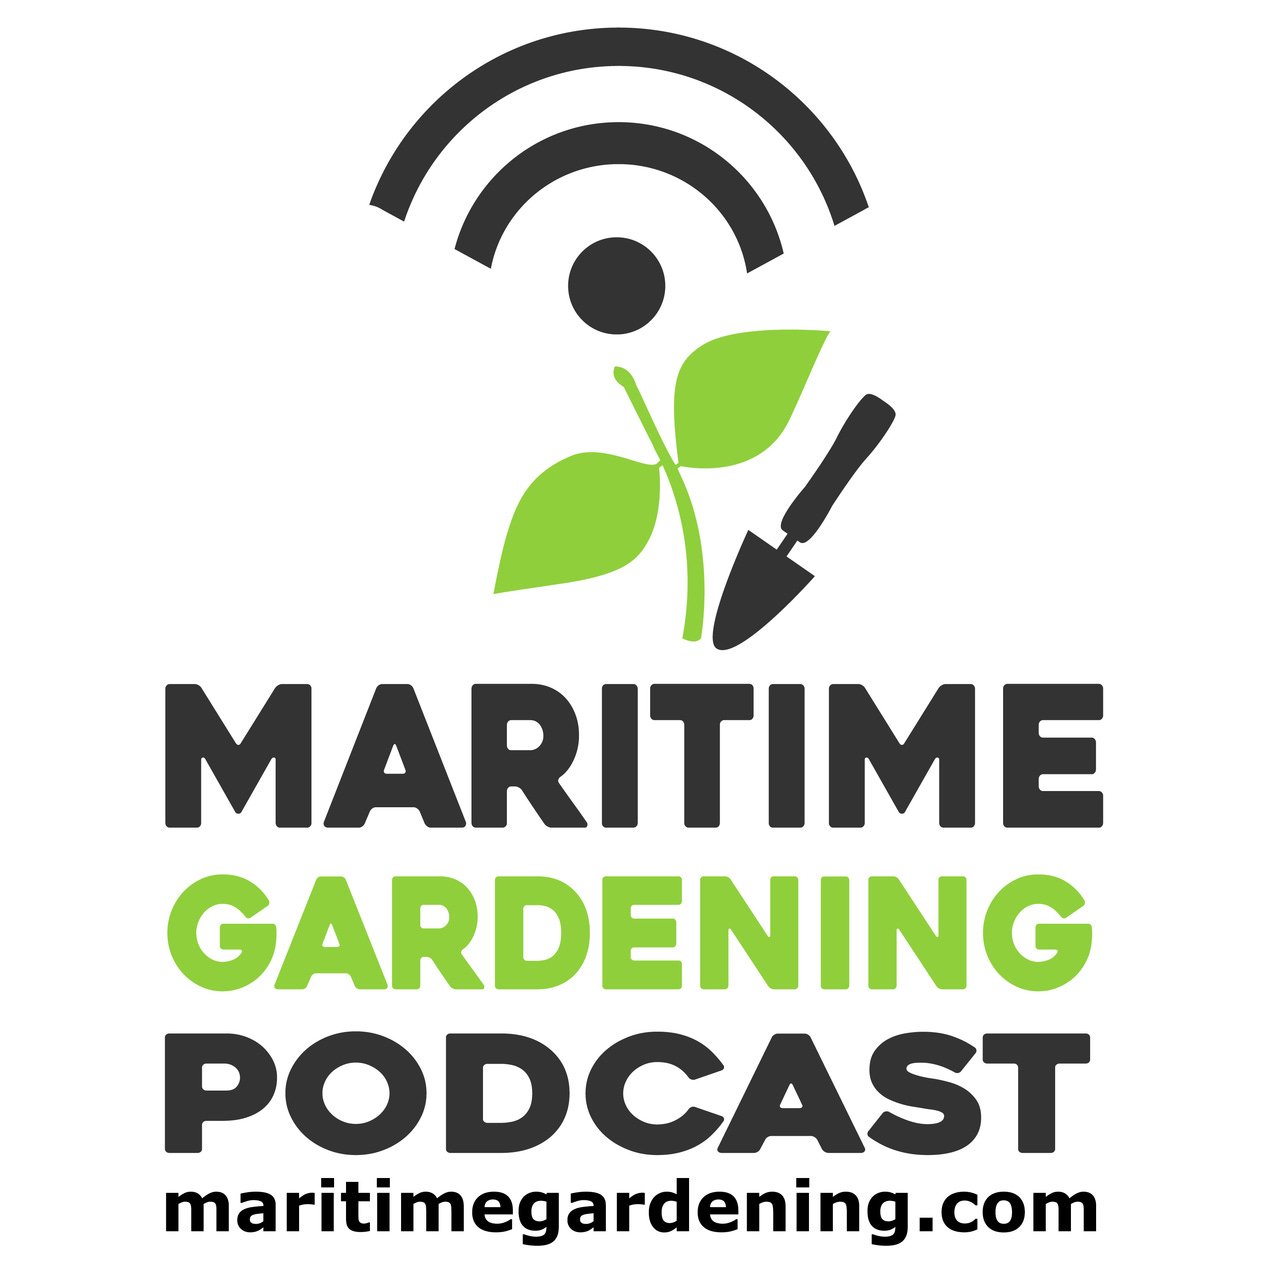 The Maritime Gardening Newsletter